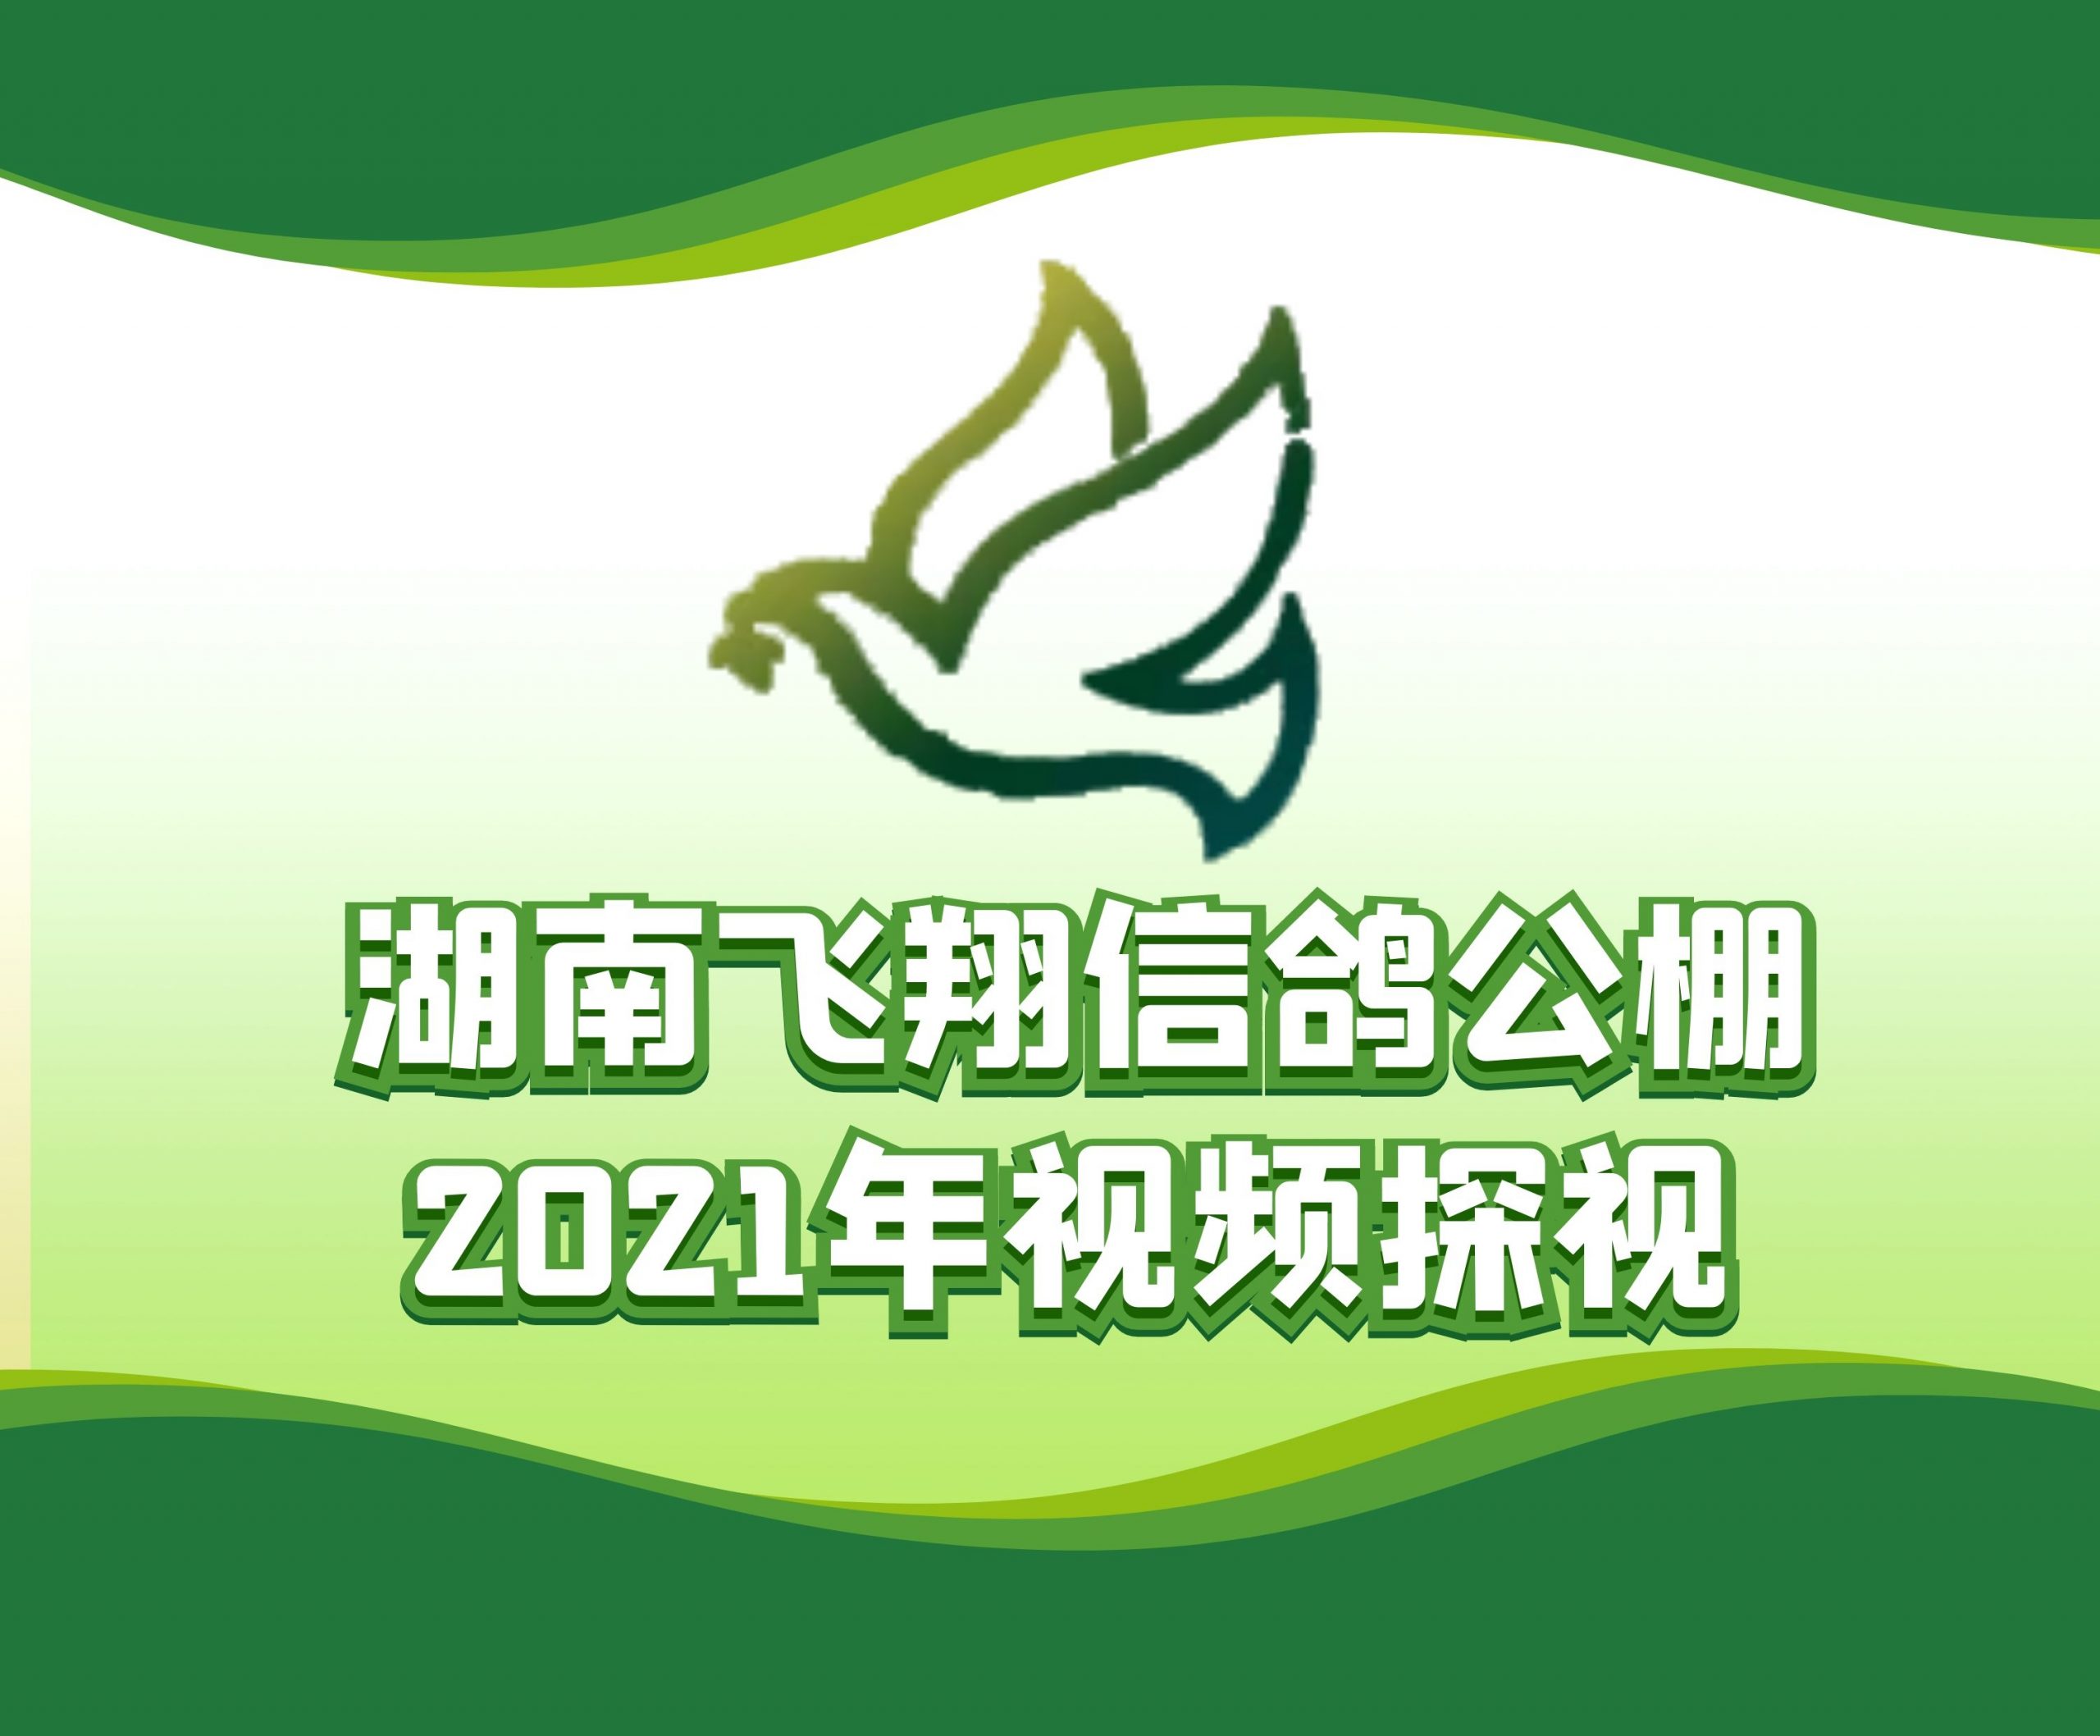 刘震宇-2021-23-0221386